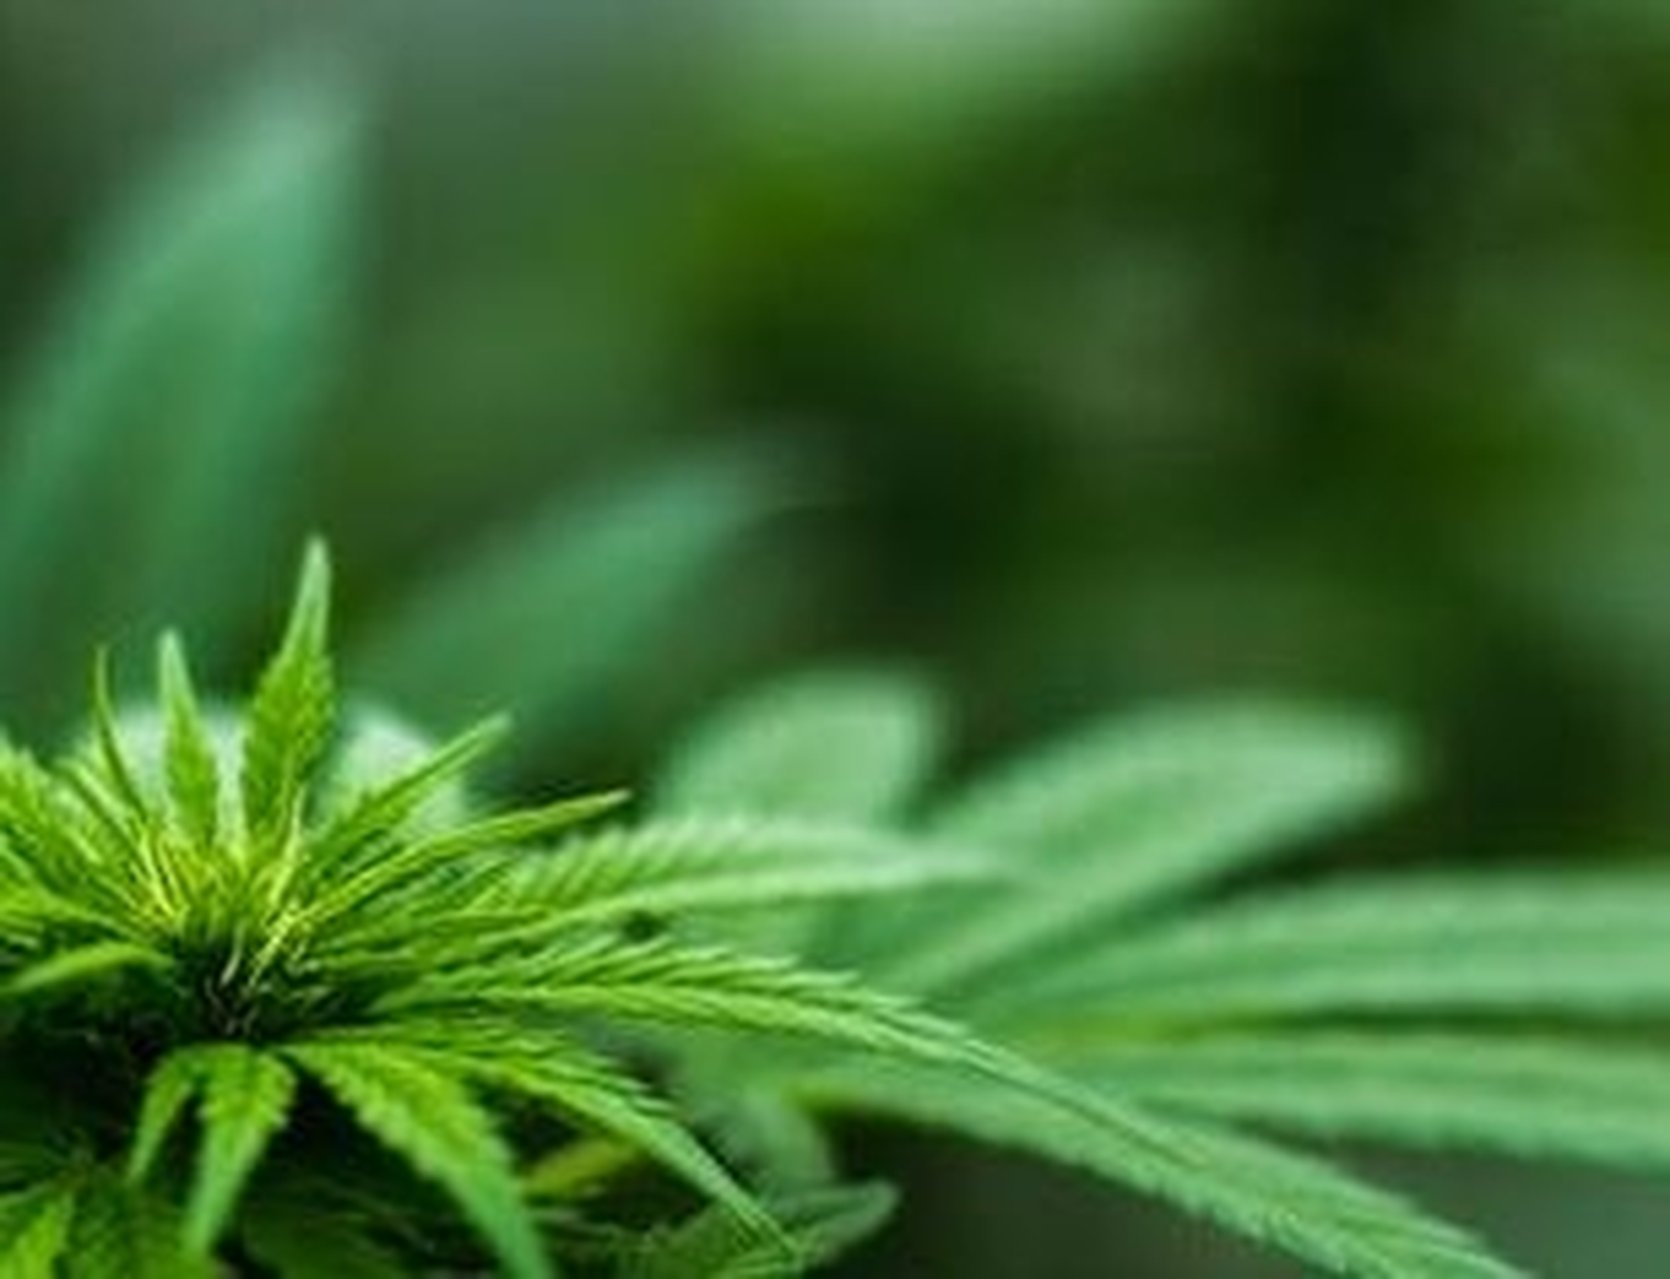 Problematisch cannabisgebruik: cijfers en preventie